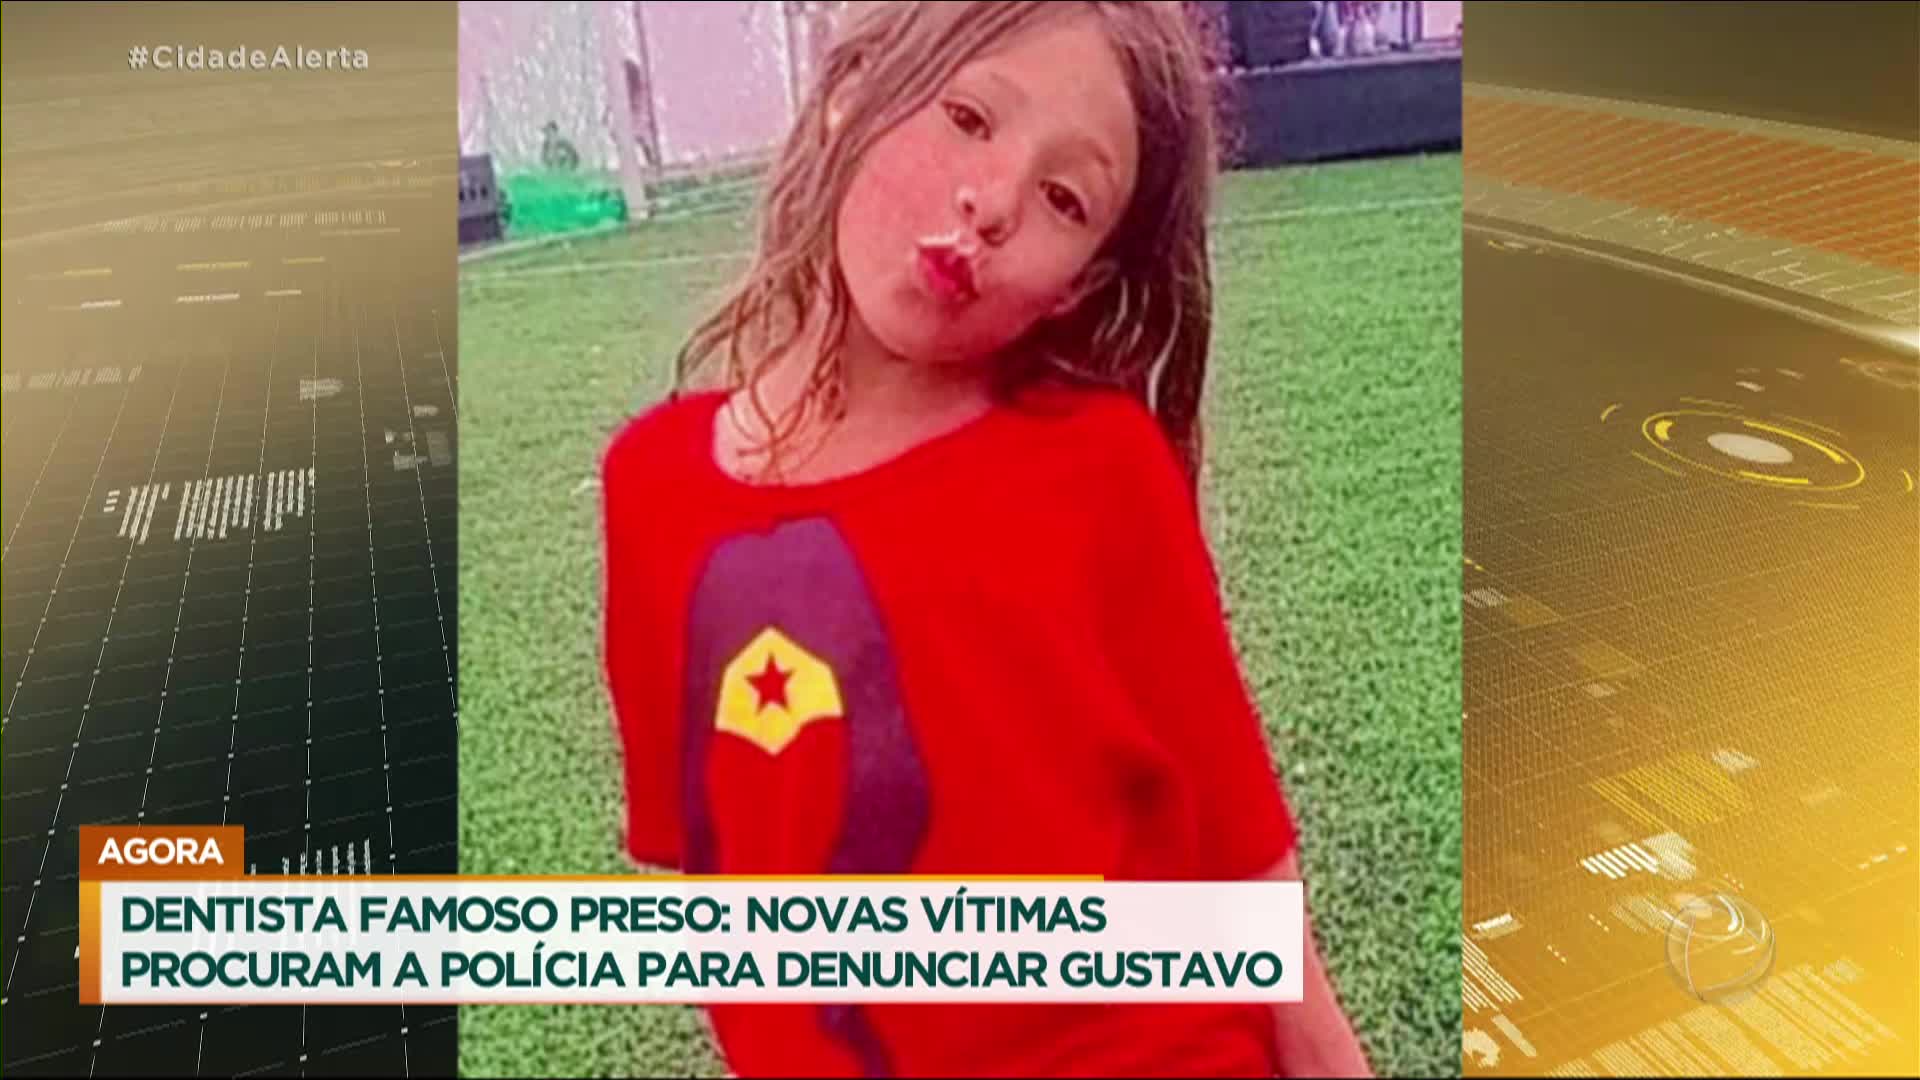 VIVA ABC - #URGENTE CRIANÇA DESAPARECIDA A menina Luana, 10 anos